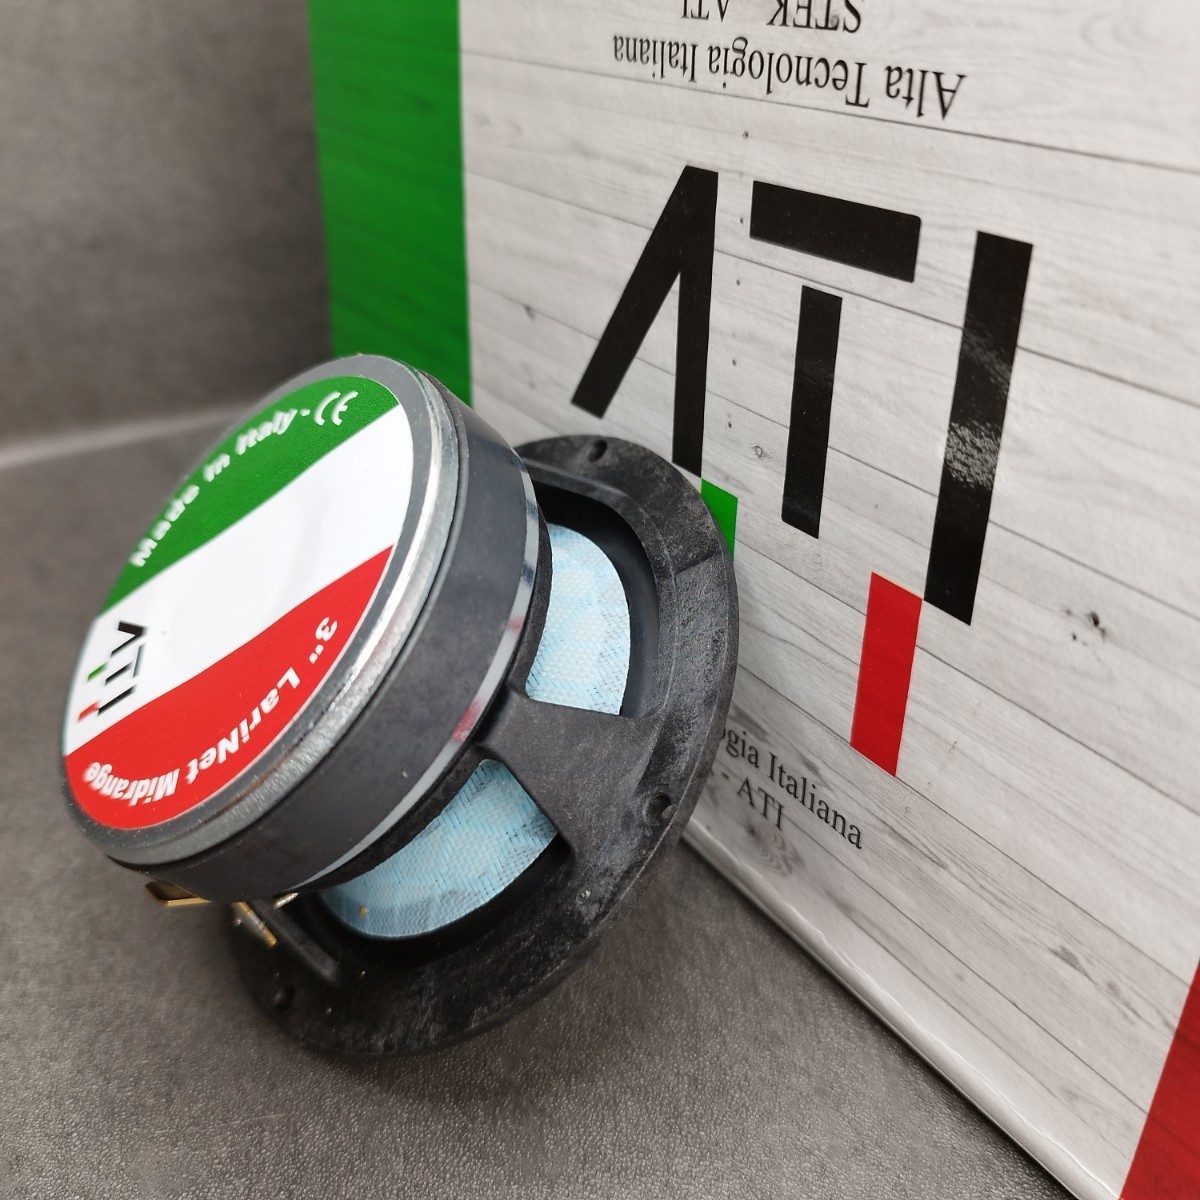 【送料無料】ハンドメイド【イタリア製】高音質 ATI Italy LARINET Mid 3インチミッドレンジスピーカー スコーカー カーオーディオ 3way化_画像5